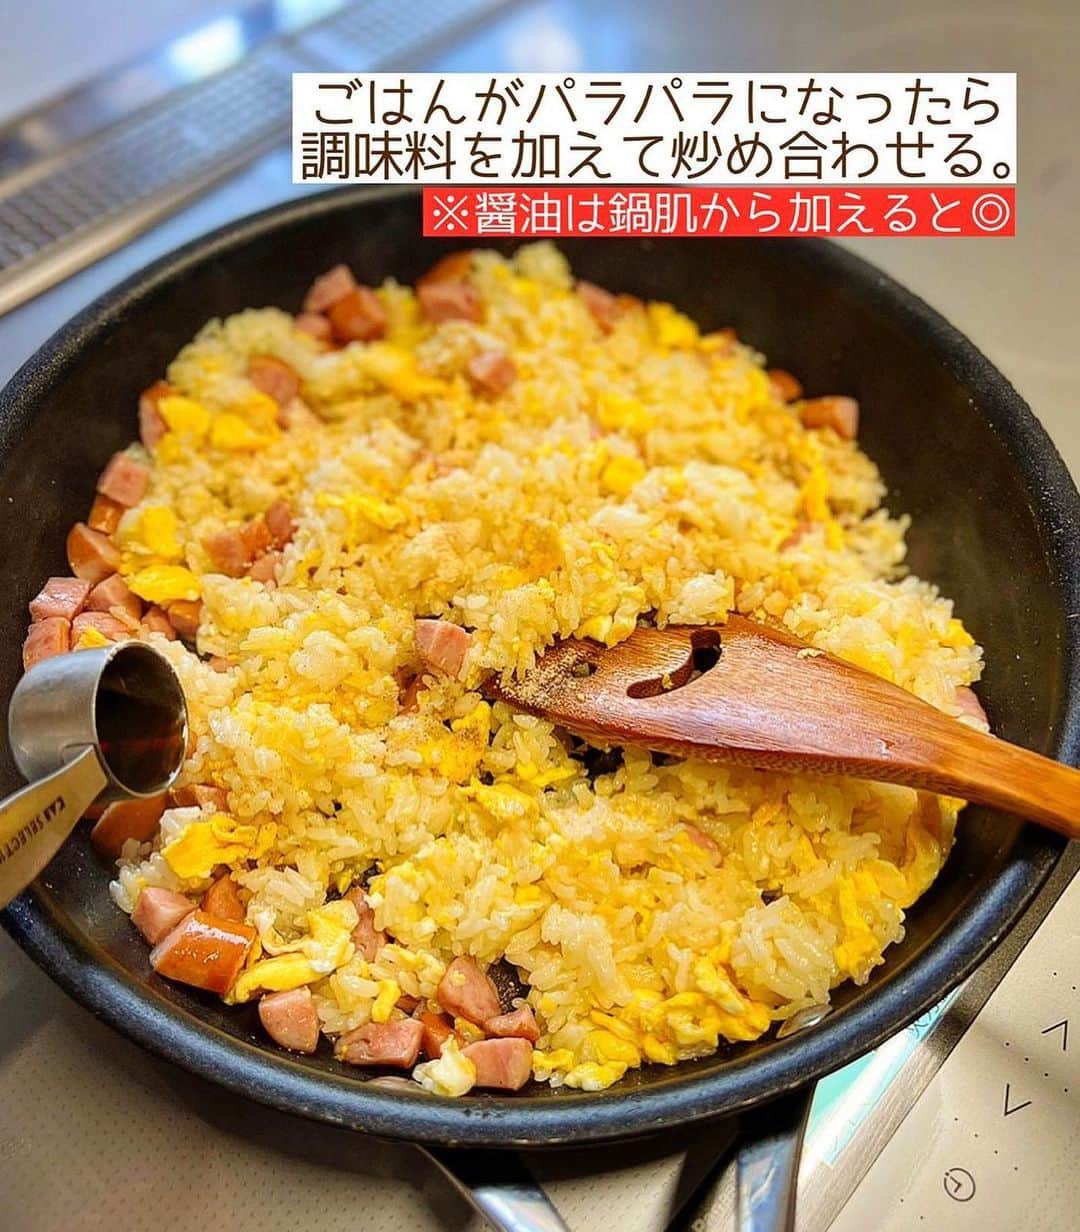 Mizuki【料理ブロガー・簡単レシピ】さんのインスタグラム写真 - (Mizuki【料理ブロガー・簡単レシピ】Instagram)「・春休みごはんに🌸 ⁡ ［#レシピ ］ ーーーーーーーーーーーーーーーーーー 卵とウインナーのシンプルチャーハン ーーーーーーーーーーーーーーーーーー ⁡ ⁡ ⁡ おはようございます☺️ ⁡ 今日ご紹介させていただくのは あっという間にできる \ シンプルチャーハン / (再掲載✨) ⁡ 具は卵とウインナーだけ💕 準備がラクなのはもちろん 水分が出にくい食材だけで パラパラに仕上がりますよ〜🍳 味付けはコクのある鶏がら醤油で 何度でも食べたくなるおいしさです✨ ⁡ コスパも抜群なので よかったらお試し下さいね😋 ⁡ ⁡ 【簡単・時短・節約レシピ更新中🔻】 @mizuki_31cafe ⁡ ⁡ ⁡ ＿＿＿＿＿＿＿＿＿＿＿＿＿＿＿＿＿＿＿ 【2人分】 温かいごはん...400g 卵...2個 ウインナー...4本 ごま油...大1 ●鶏がらスープ・醤油...各大1/2 ●塩こしょう...少々 ねぎ(小口切り)・粗挽き黒こしょう...各適量 ⁡ 1.卵は溶きほぐす。ウインナーは細かめに切る。 2.フライパンにごま油を中火で熱し、溶き卵を流し入れる。半熟になってきたらごはんとウインナーを加え、手早く炒める。 3.ごはんがパラパラになったら●を加えて炒め合わせる。器に盛ってねぎをのせ、黒こしょうを振る。 ￣￣￣￣￣￣￣￣￣￣￣￣￣￣￣￣￣￣ ⁡ ⁡ 《ポイント》 ♦︎ウインナーの代わりに焼き豚やベーコンを使用しても○ ♦︎''卵がかたまる前に''ごはんとウインナーを加え、手早く炒めます♩ ♦︎(余裕があれば)醤油は鍋肌から加えると香ばしくなります♩ ⁡ ⁡ ⁡ ⁡ ⁡ ⁡ 𖤣𖥧𖥣𖡡𖥧𖤣✨ 愛用している調理器具や器などは #楽天ROOMに載せてます ‎𐩢𐩺 (ハイライトから飛べます🛍) ⁡ ⁡ ⁡ ⁡ ⁡ ⁡ ⁡ 🔶全国の書店・ネット書店で発売中🔶 ⁡ ✼••┈┈┈┈┈••✼••┈┈┈┈┈••✼ 今日のごはんこれに決まり！ ‎𓊆#Mizukiのレシピノート 500品𓊇 ✼••┈┈┈┈┈••✼••┈┈┈┈┈••✼ ⁡ ˗ˏˋ おかげさまで23万部突破 ˎˊ˗ 料理レシピ本大賞準大賞を受賞しました🙇‍♀️ ⁡ 6000点の中からレシピを厳選し まさかの【500レシピ掲載】❣️ 肉や魚のメインおかずはもちろん 副菜、丼、麺、スープ、お菓子 ハレの日のレシピ、鍋のレシピまで 全てこの一冊で完結𓌉◯𓇋✨ ⁡ ⁡ ⁡ 📕新刊発売中📕 ⁡ ✼••┈┈┈••✼••┈┈┈••✼ Mizukiのカンタン手作り   𓊆 #3時のおやつ 𓊇 ✼••┈┈┈••✼••┈┈┈••✼ ⁡ 『3分クッキング』で連載中の 「Mizukiのカンタン手作り」 ‎4年分のおやつが1冊になりました！ ❝オーブンなしで❞ 身近な材料と道具でできる 簡単、手軽なおやつを80品🍪 ⁡ ⁡ ⁡ ⁡ ⁡ ⁡ #卵とウインナーのシンプルチャーハンm #炒飯 #炒飯 #ウインナー #卵 #卵料理 #ランチ  #弁当 #弁当おかず #料理 #時短レシピ  #節約料理 #簡単料理  #時短料理  #mizukiレシピ  #アルモンデ #節約レシピ #簡単レシピ」3月27日 7時05分 - mizuki_31cafe